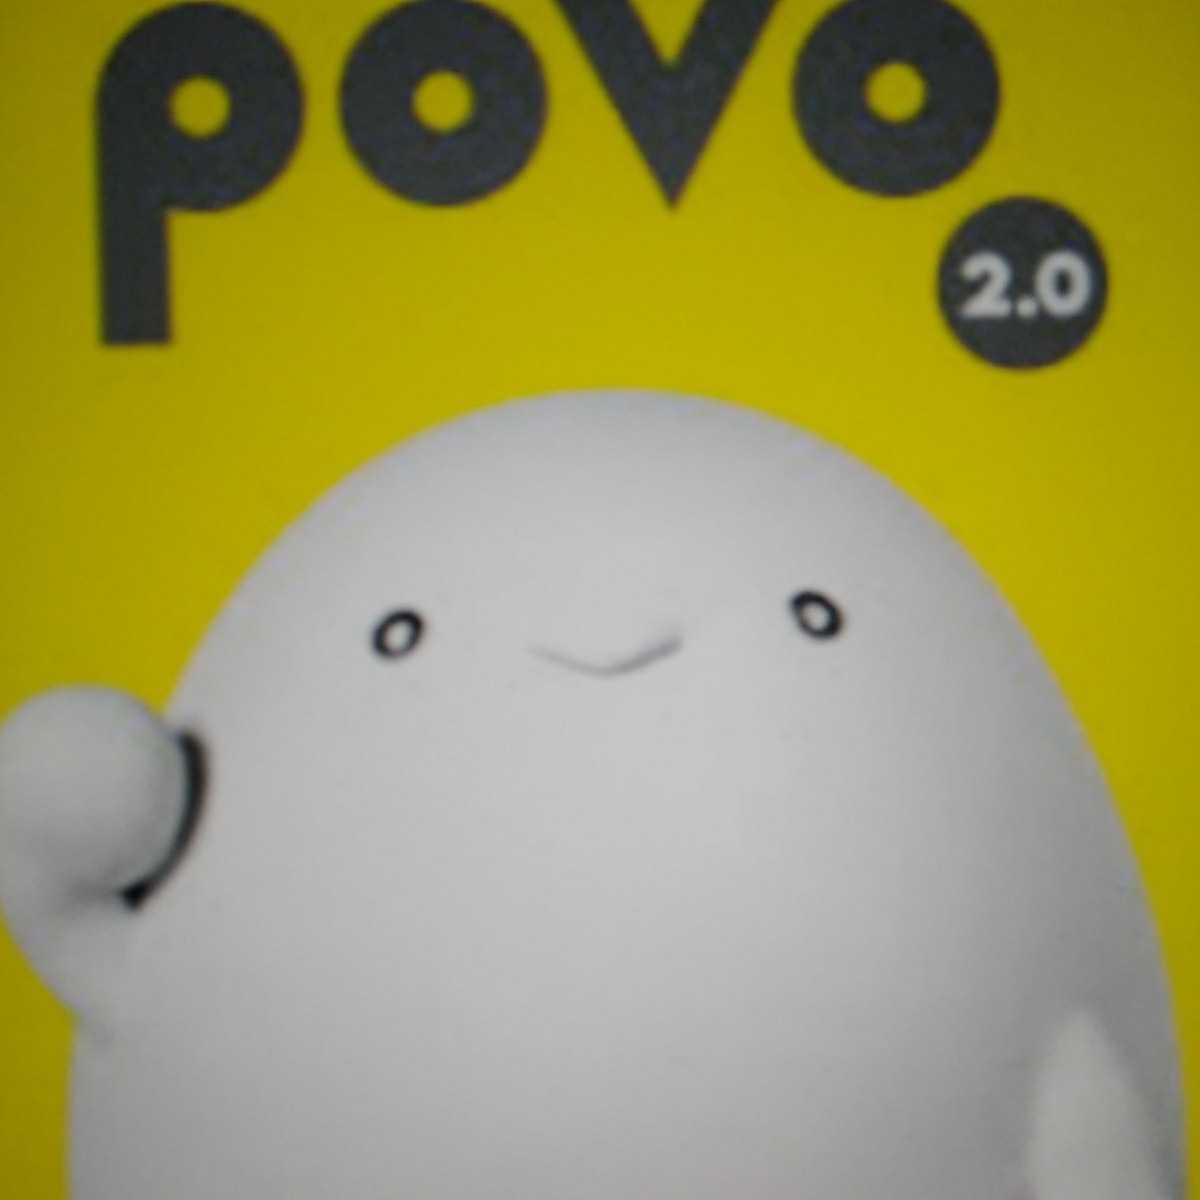 POVO 2.0 プロモコード 300MBを3個セットで合計900MB 登録期限3月31日_画像1